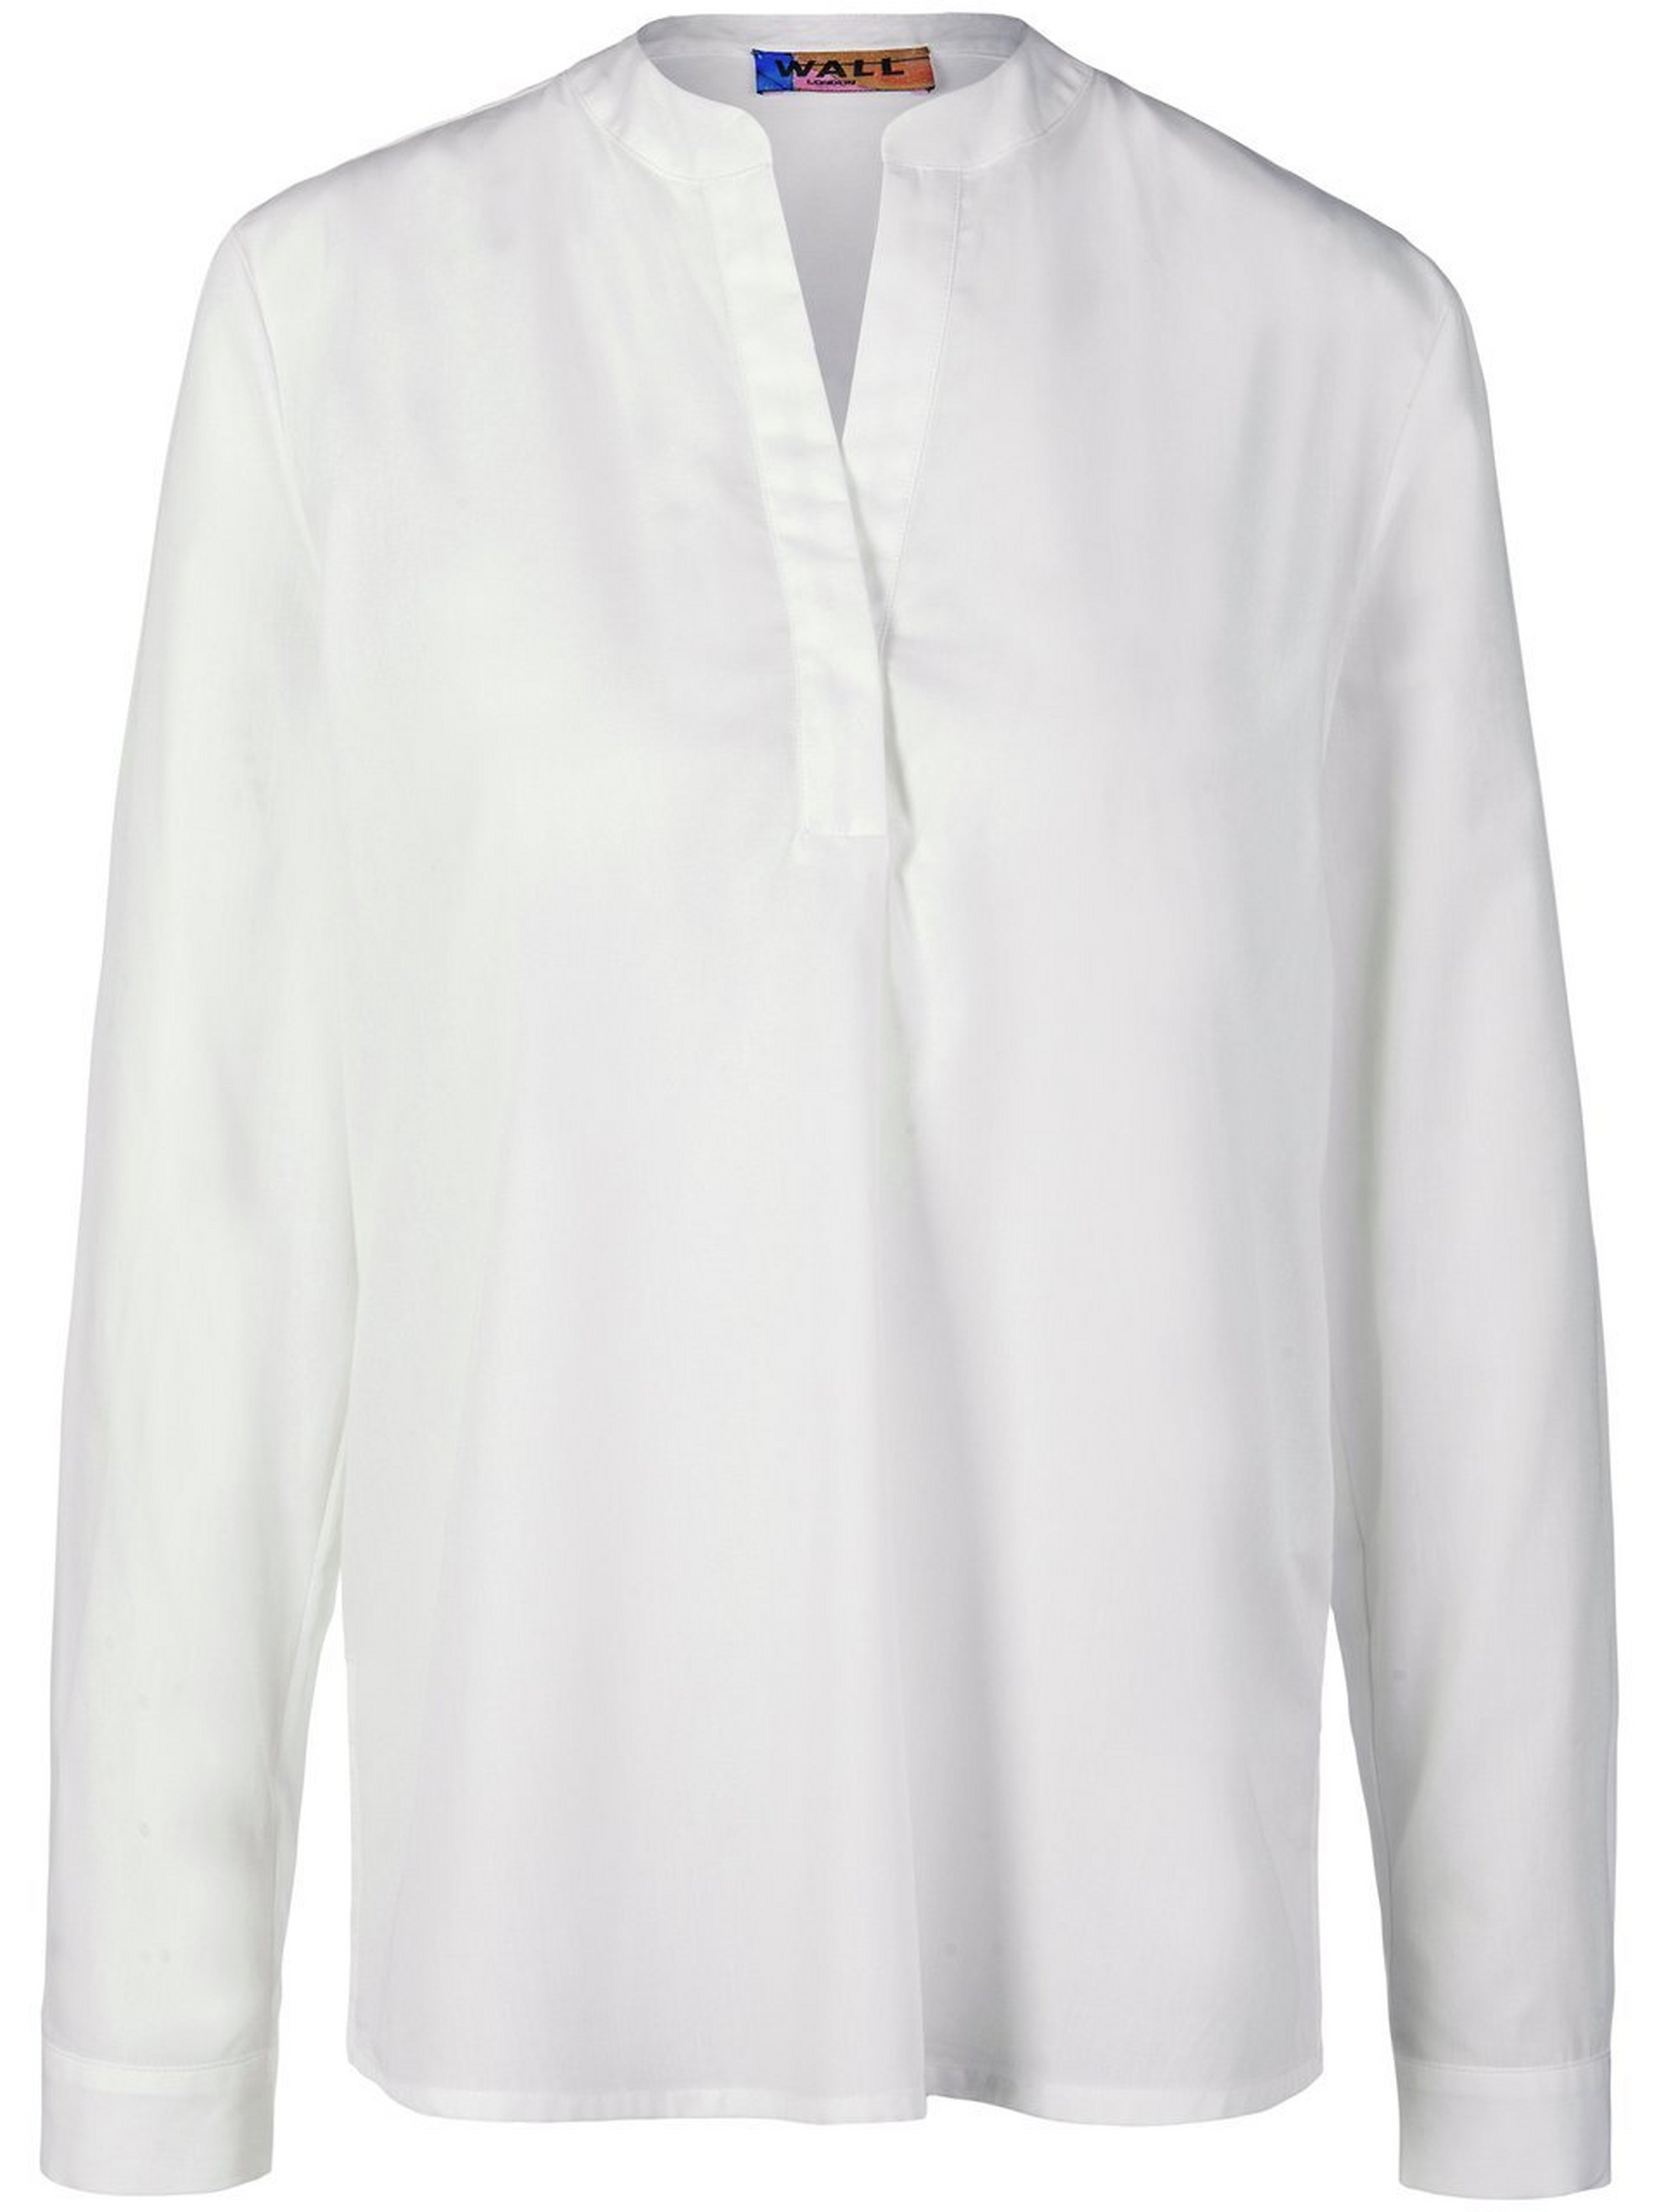 La blouse 100% coton bio  WALL London blanc taille 38